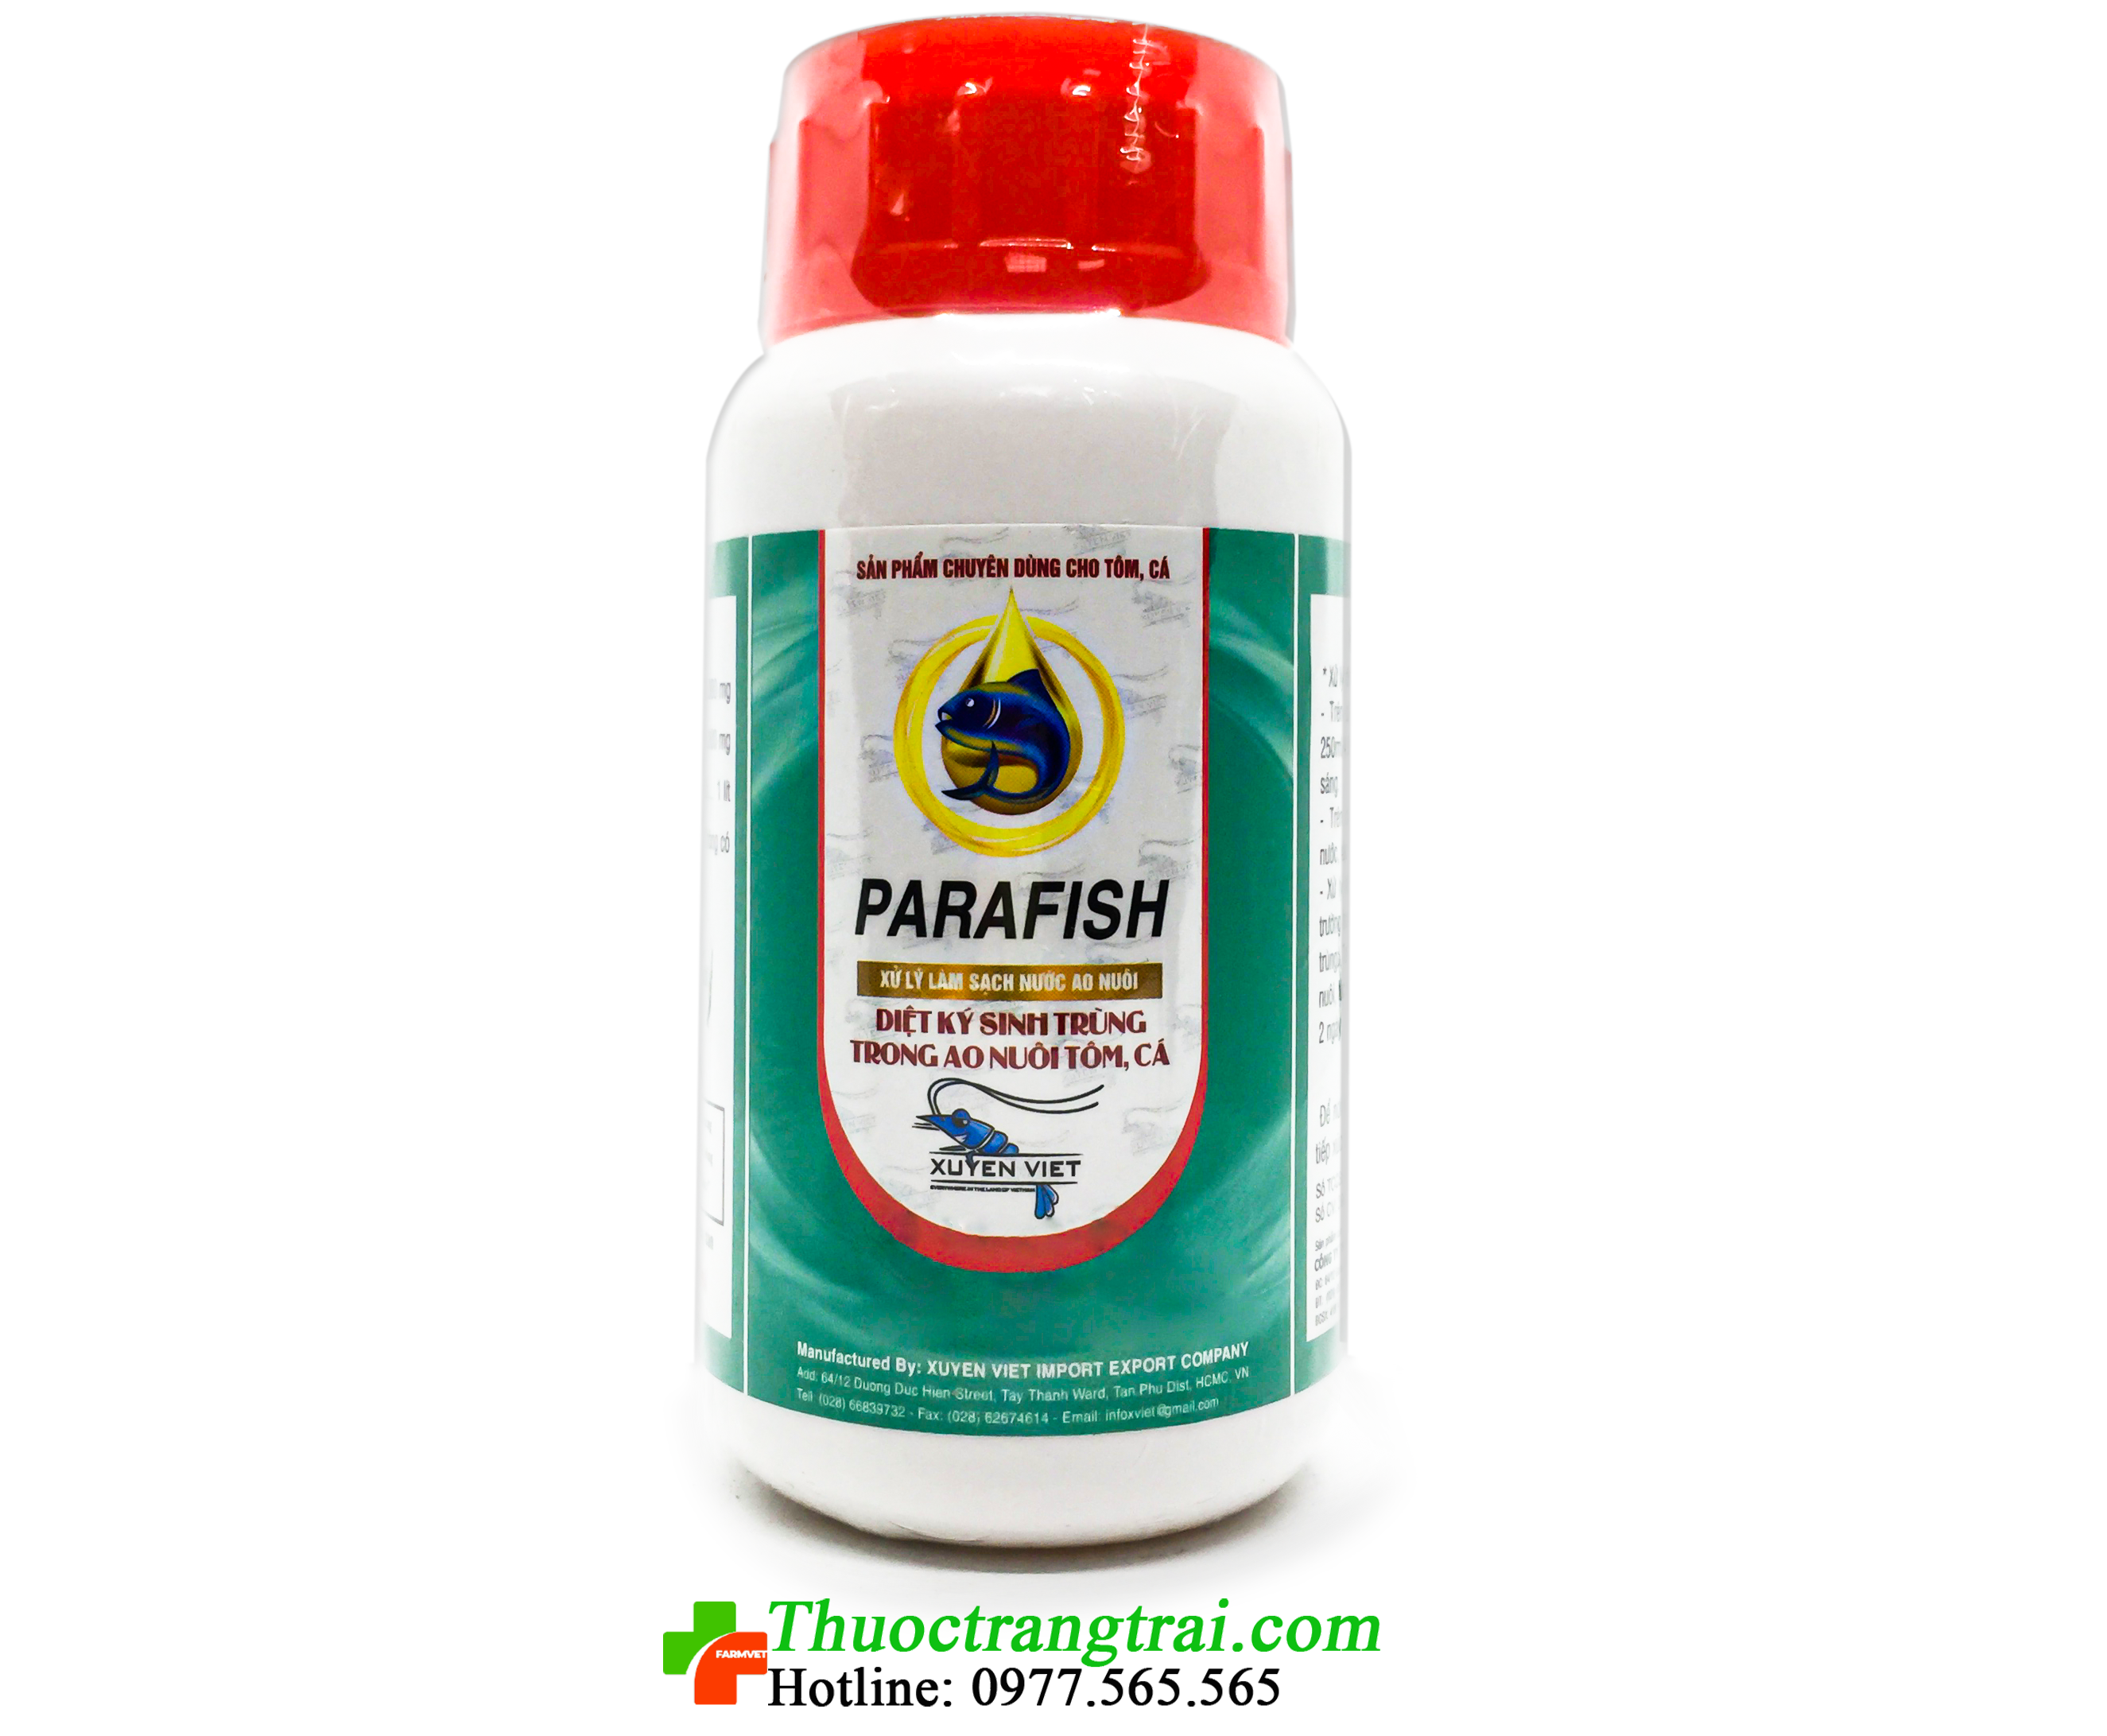 parafish-1576943870.png